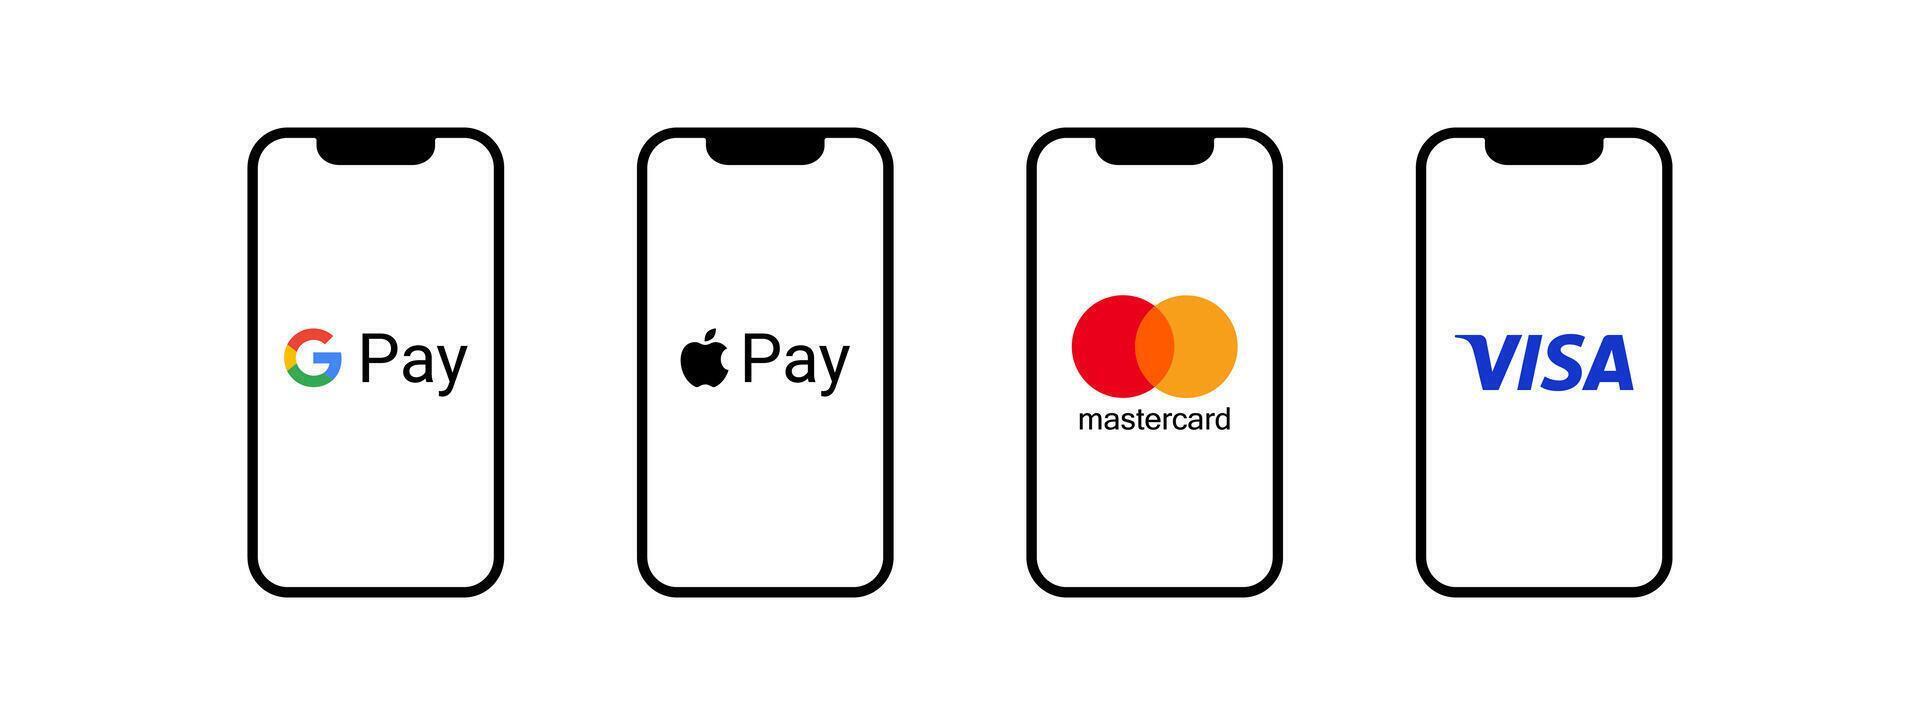 MasterCard, visto, maçã pagar, Google pagar - popular Forma de pagamento sistemas. finança sistema aplicativo. banco cartão. nfc pagar telefone. vetor ilustração.